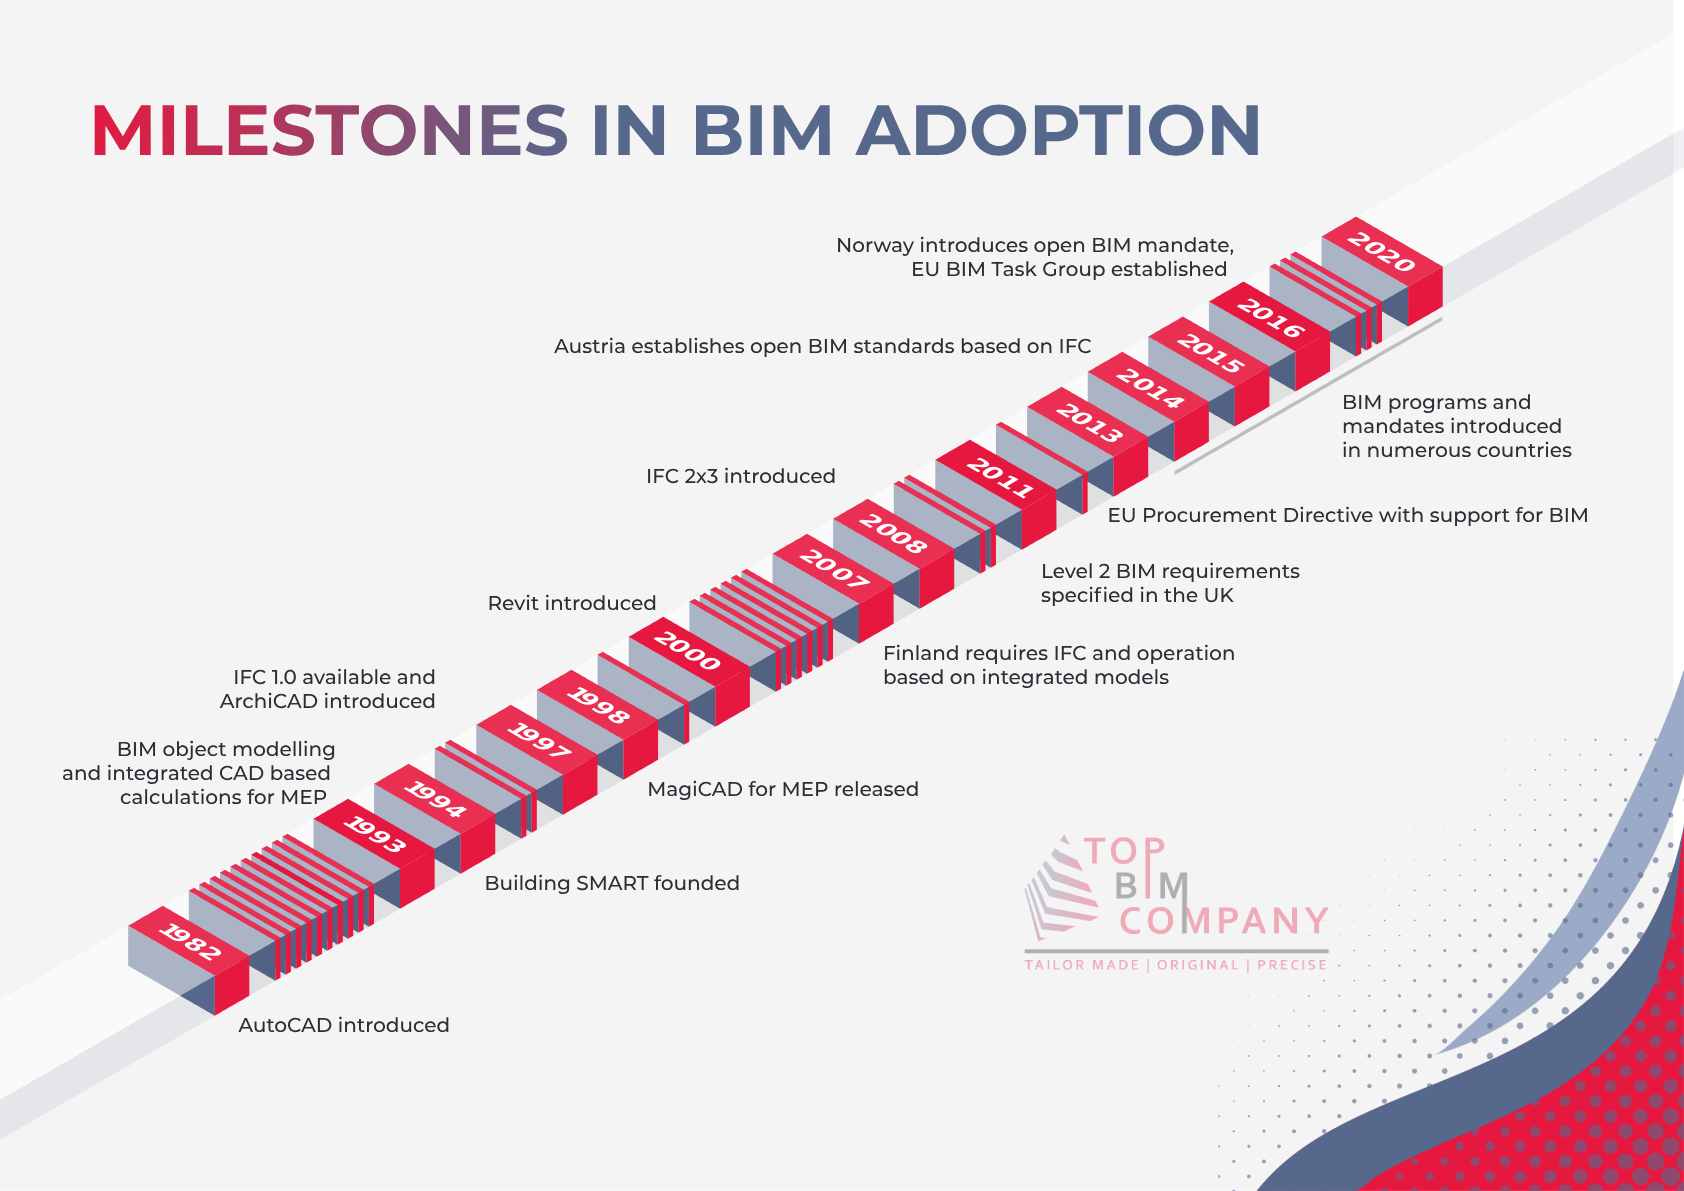 Milestones in European BIM Adoption